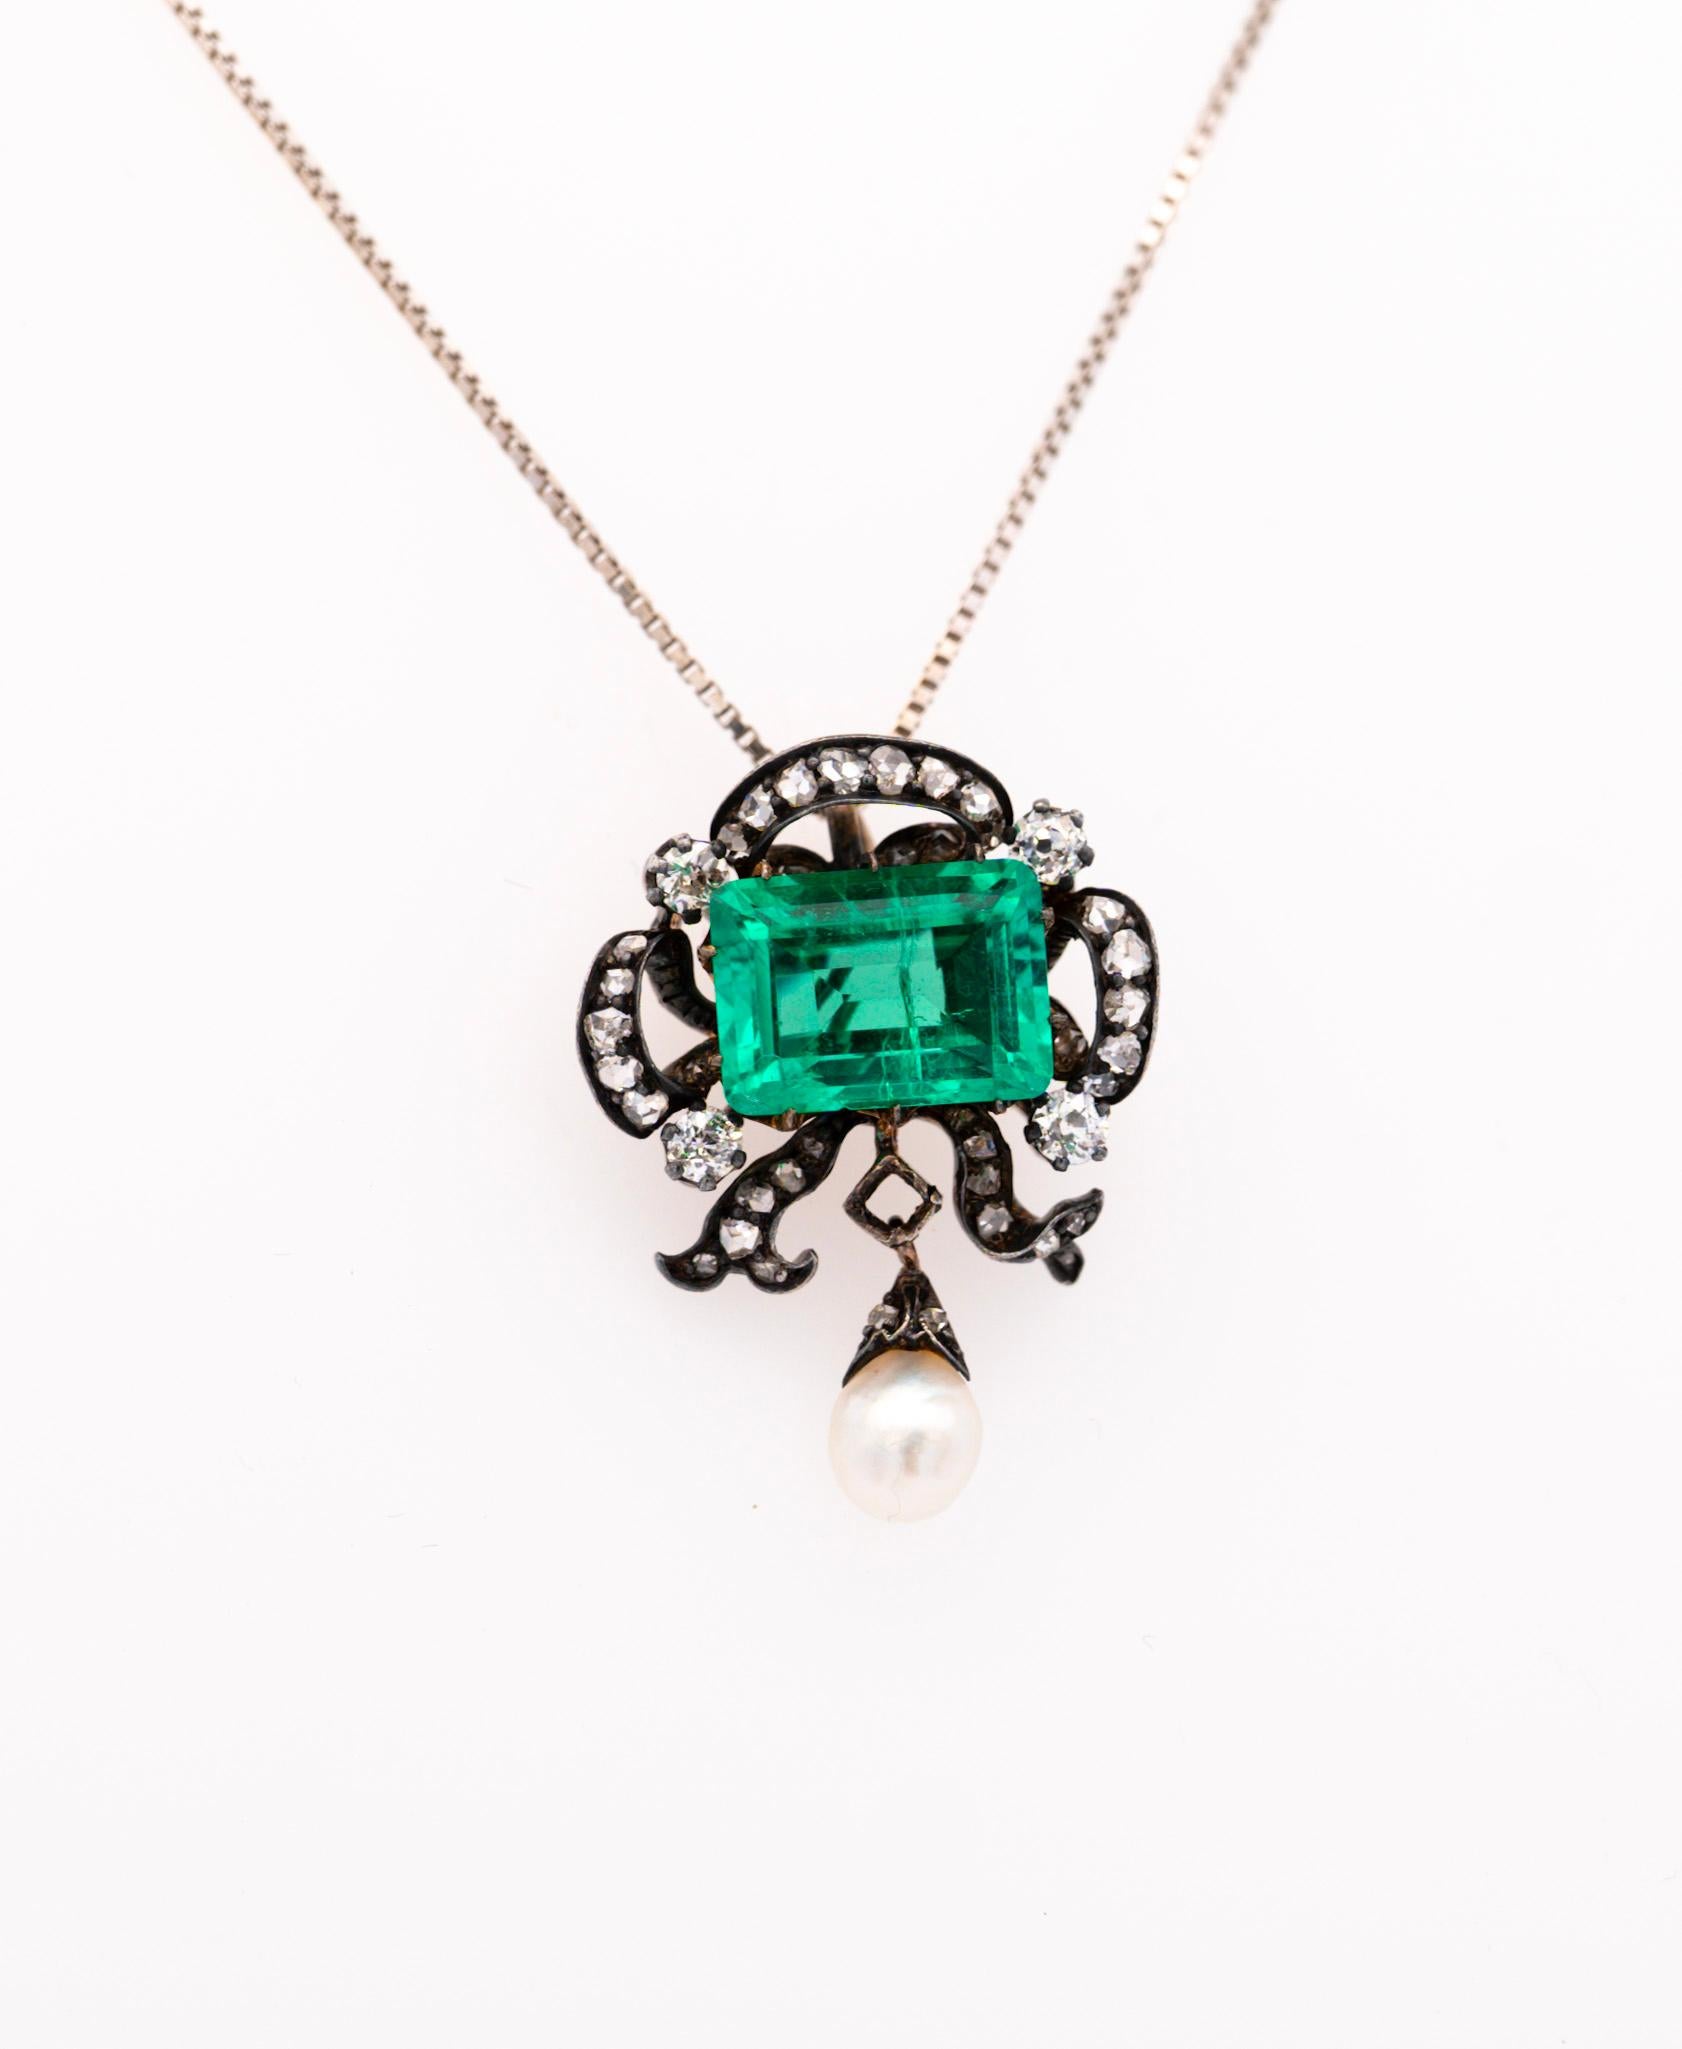 Emerald Cut Antique Victorian Colombia Emerald, Pearl, & Old Mine Diamond Pendant Circa 1880 For Sale